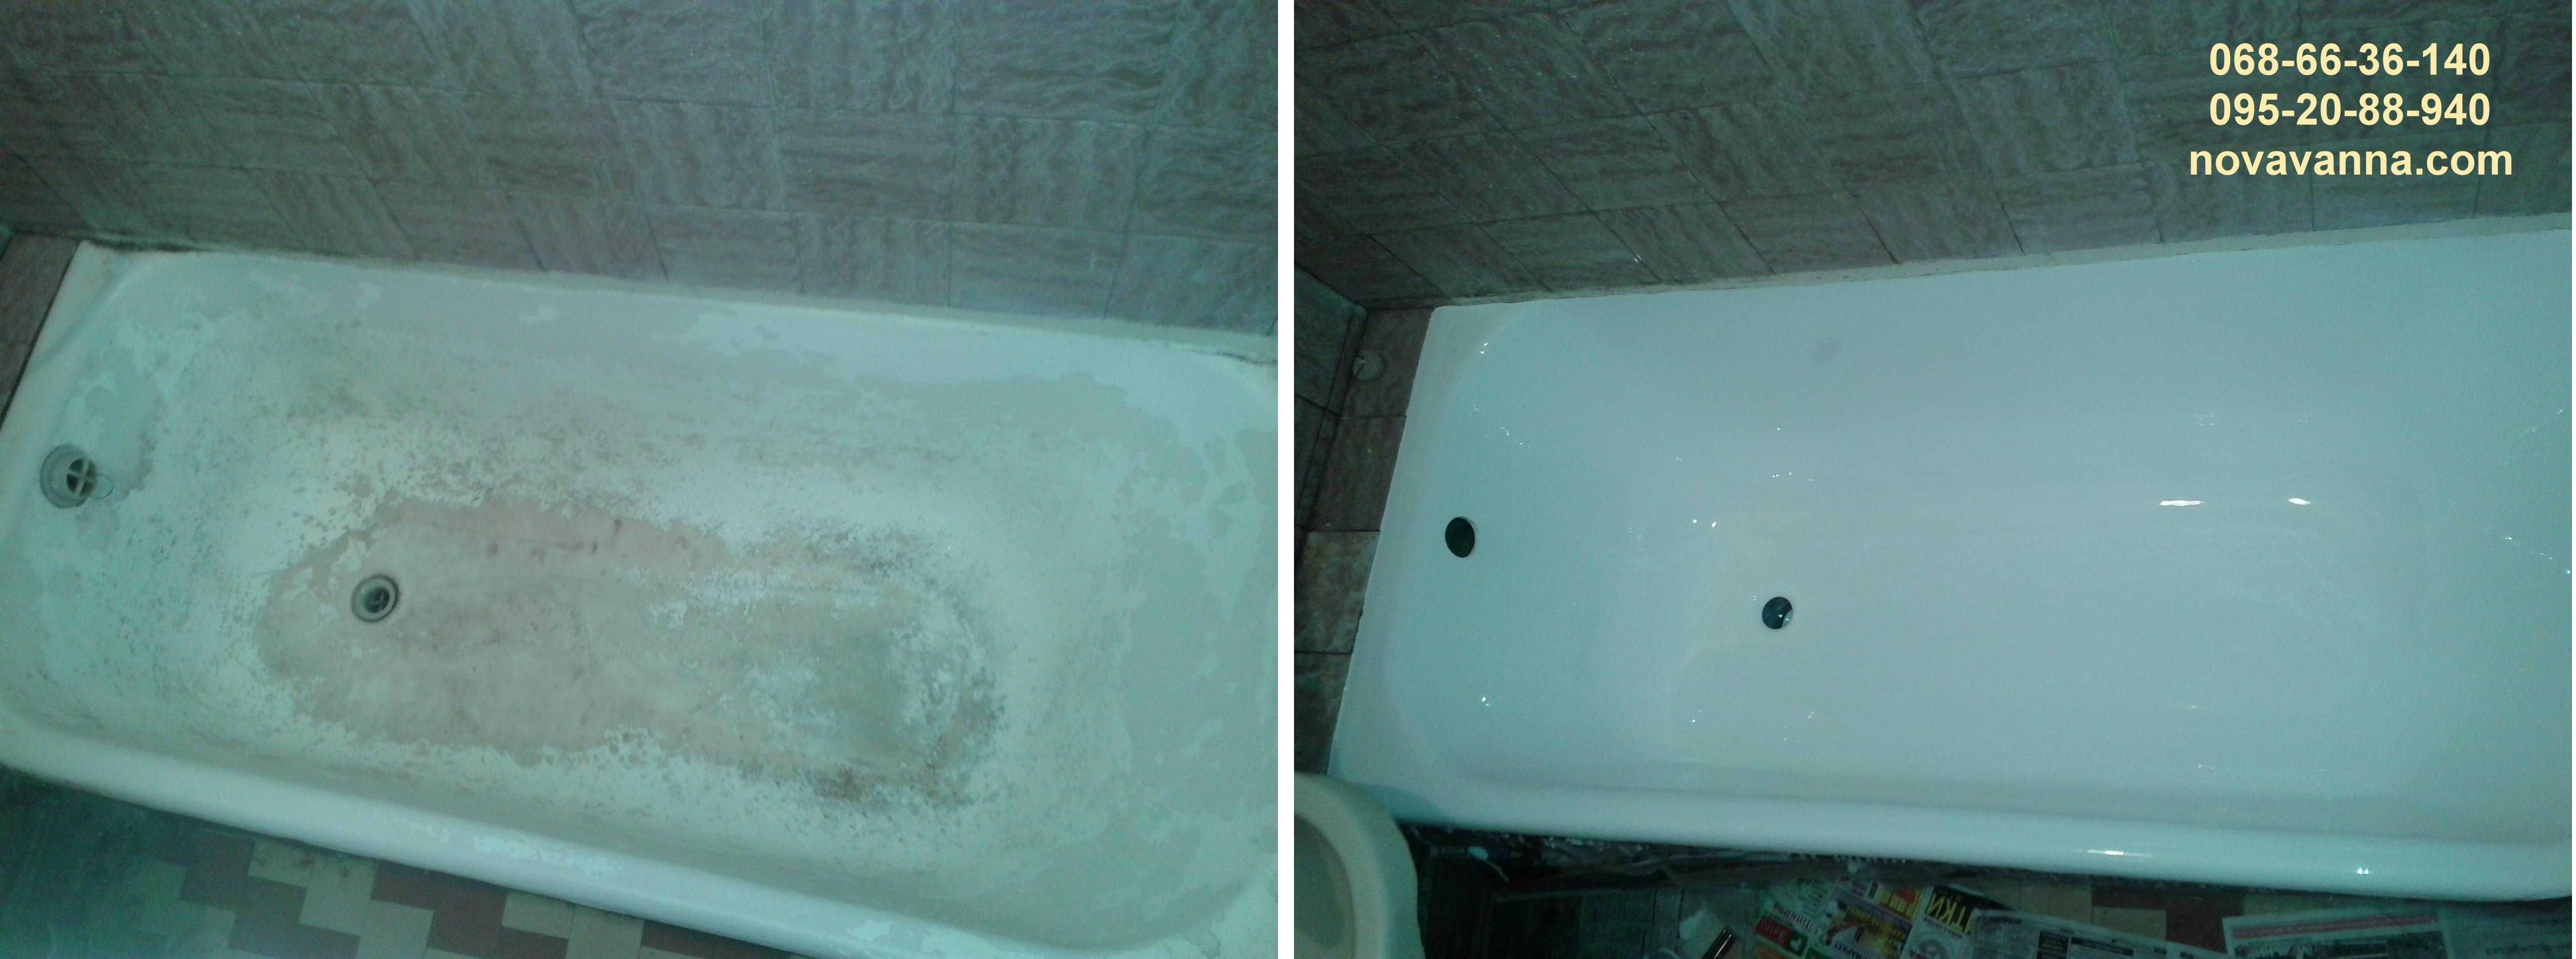 Реставрация ванн СУМЫ. Восстановление ванн Сумы и область. Гарантия